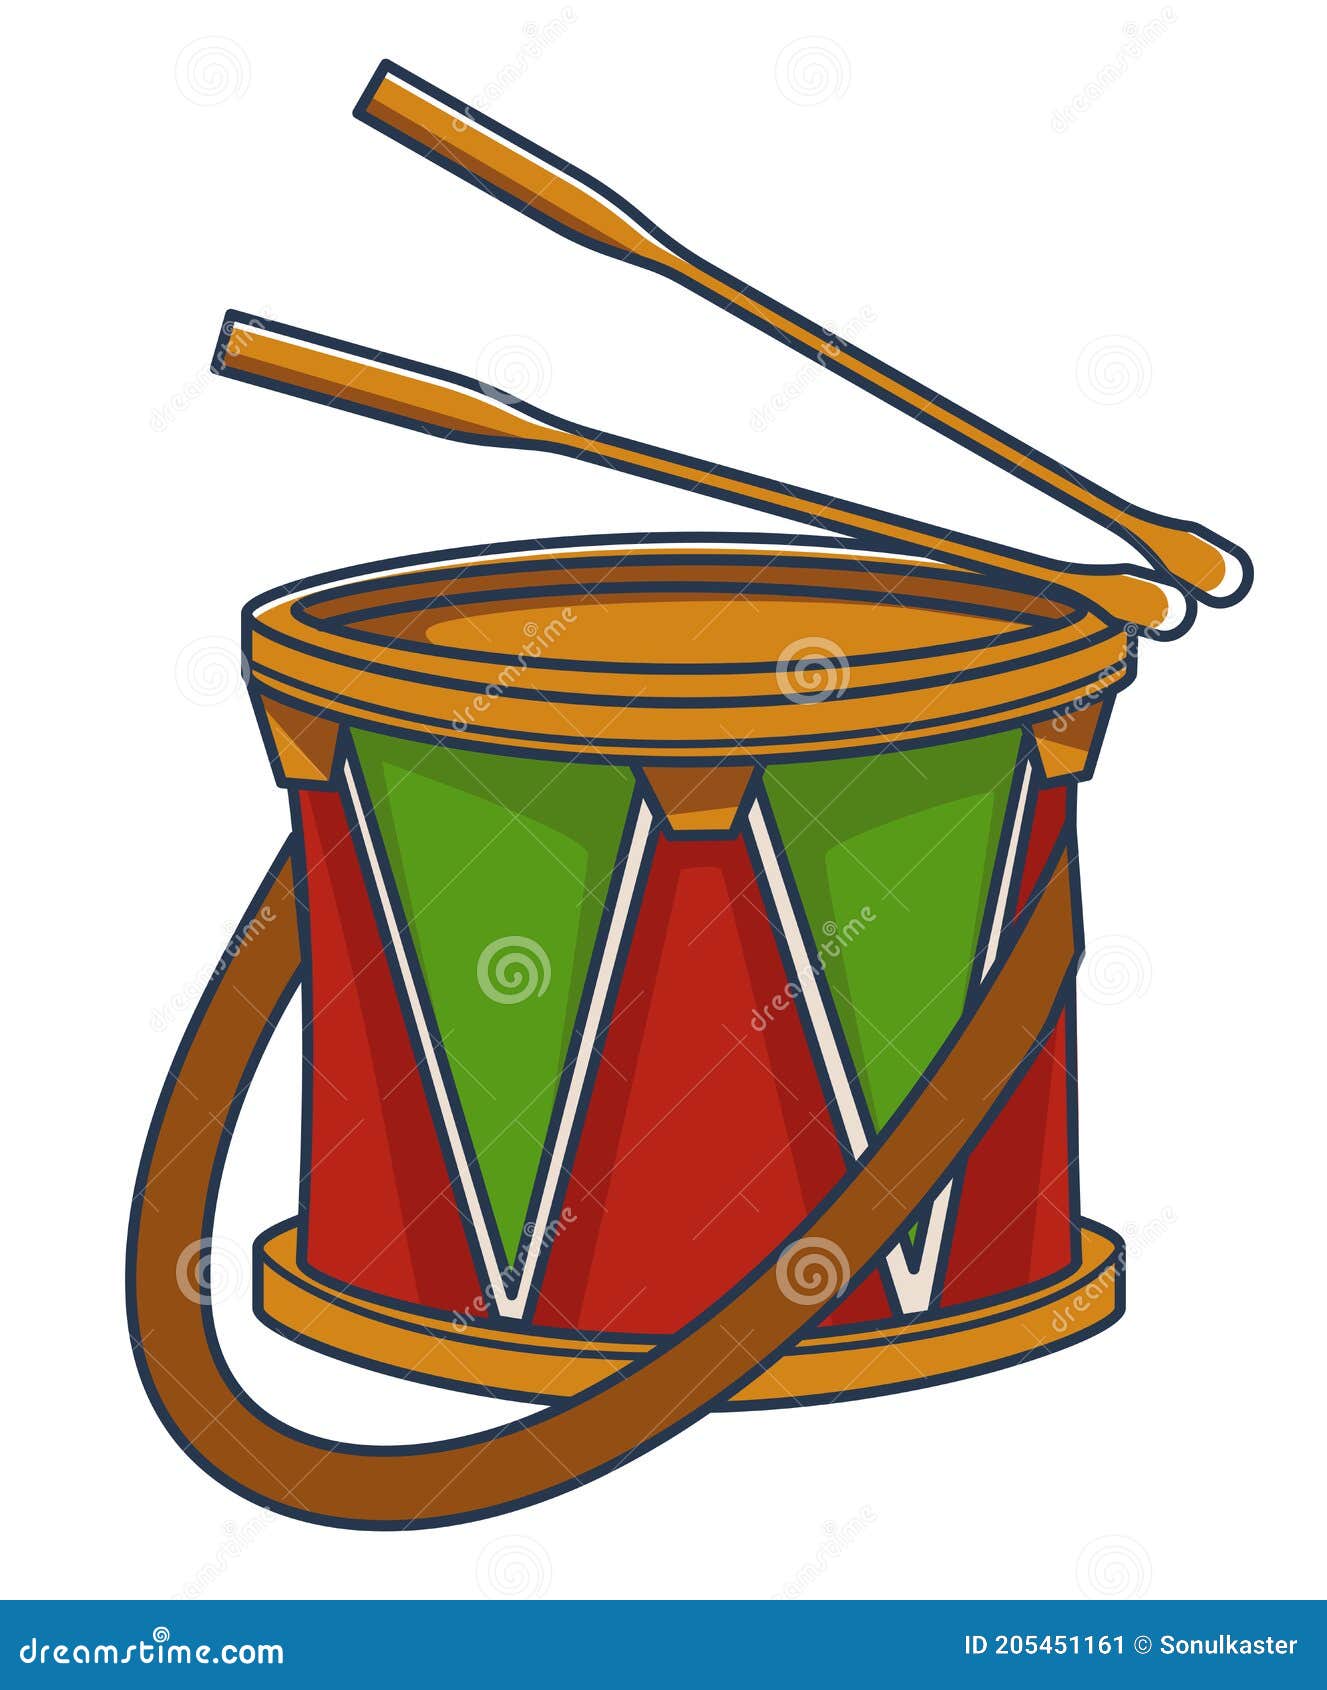 Rockmusic Tambor de Madera Instrumento Musical ROCKSTAR TGC para niños madera con Dibujos animales Correa y Palillos 